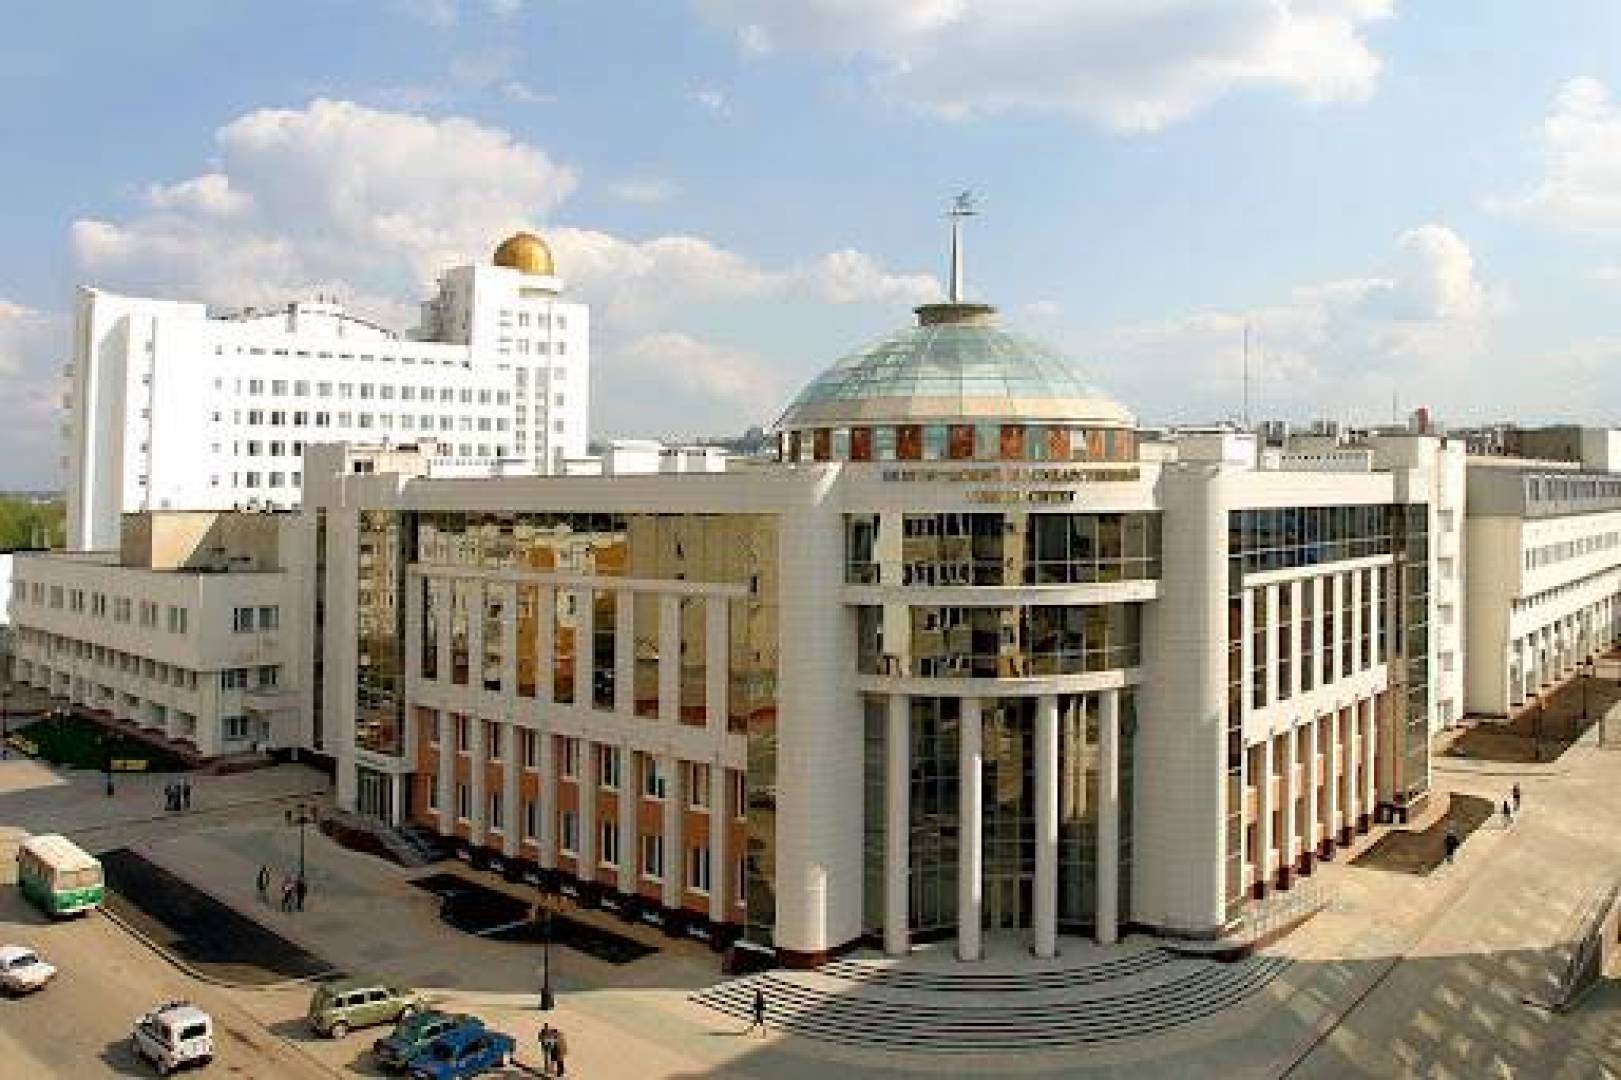 Сайт белгородский государственный университет